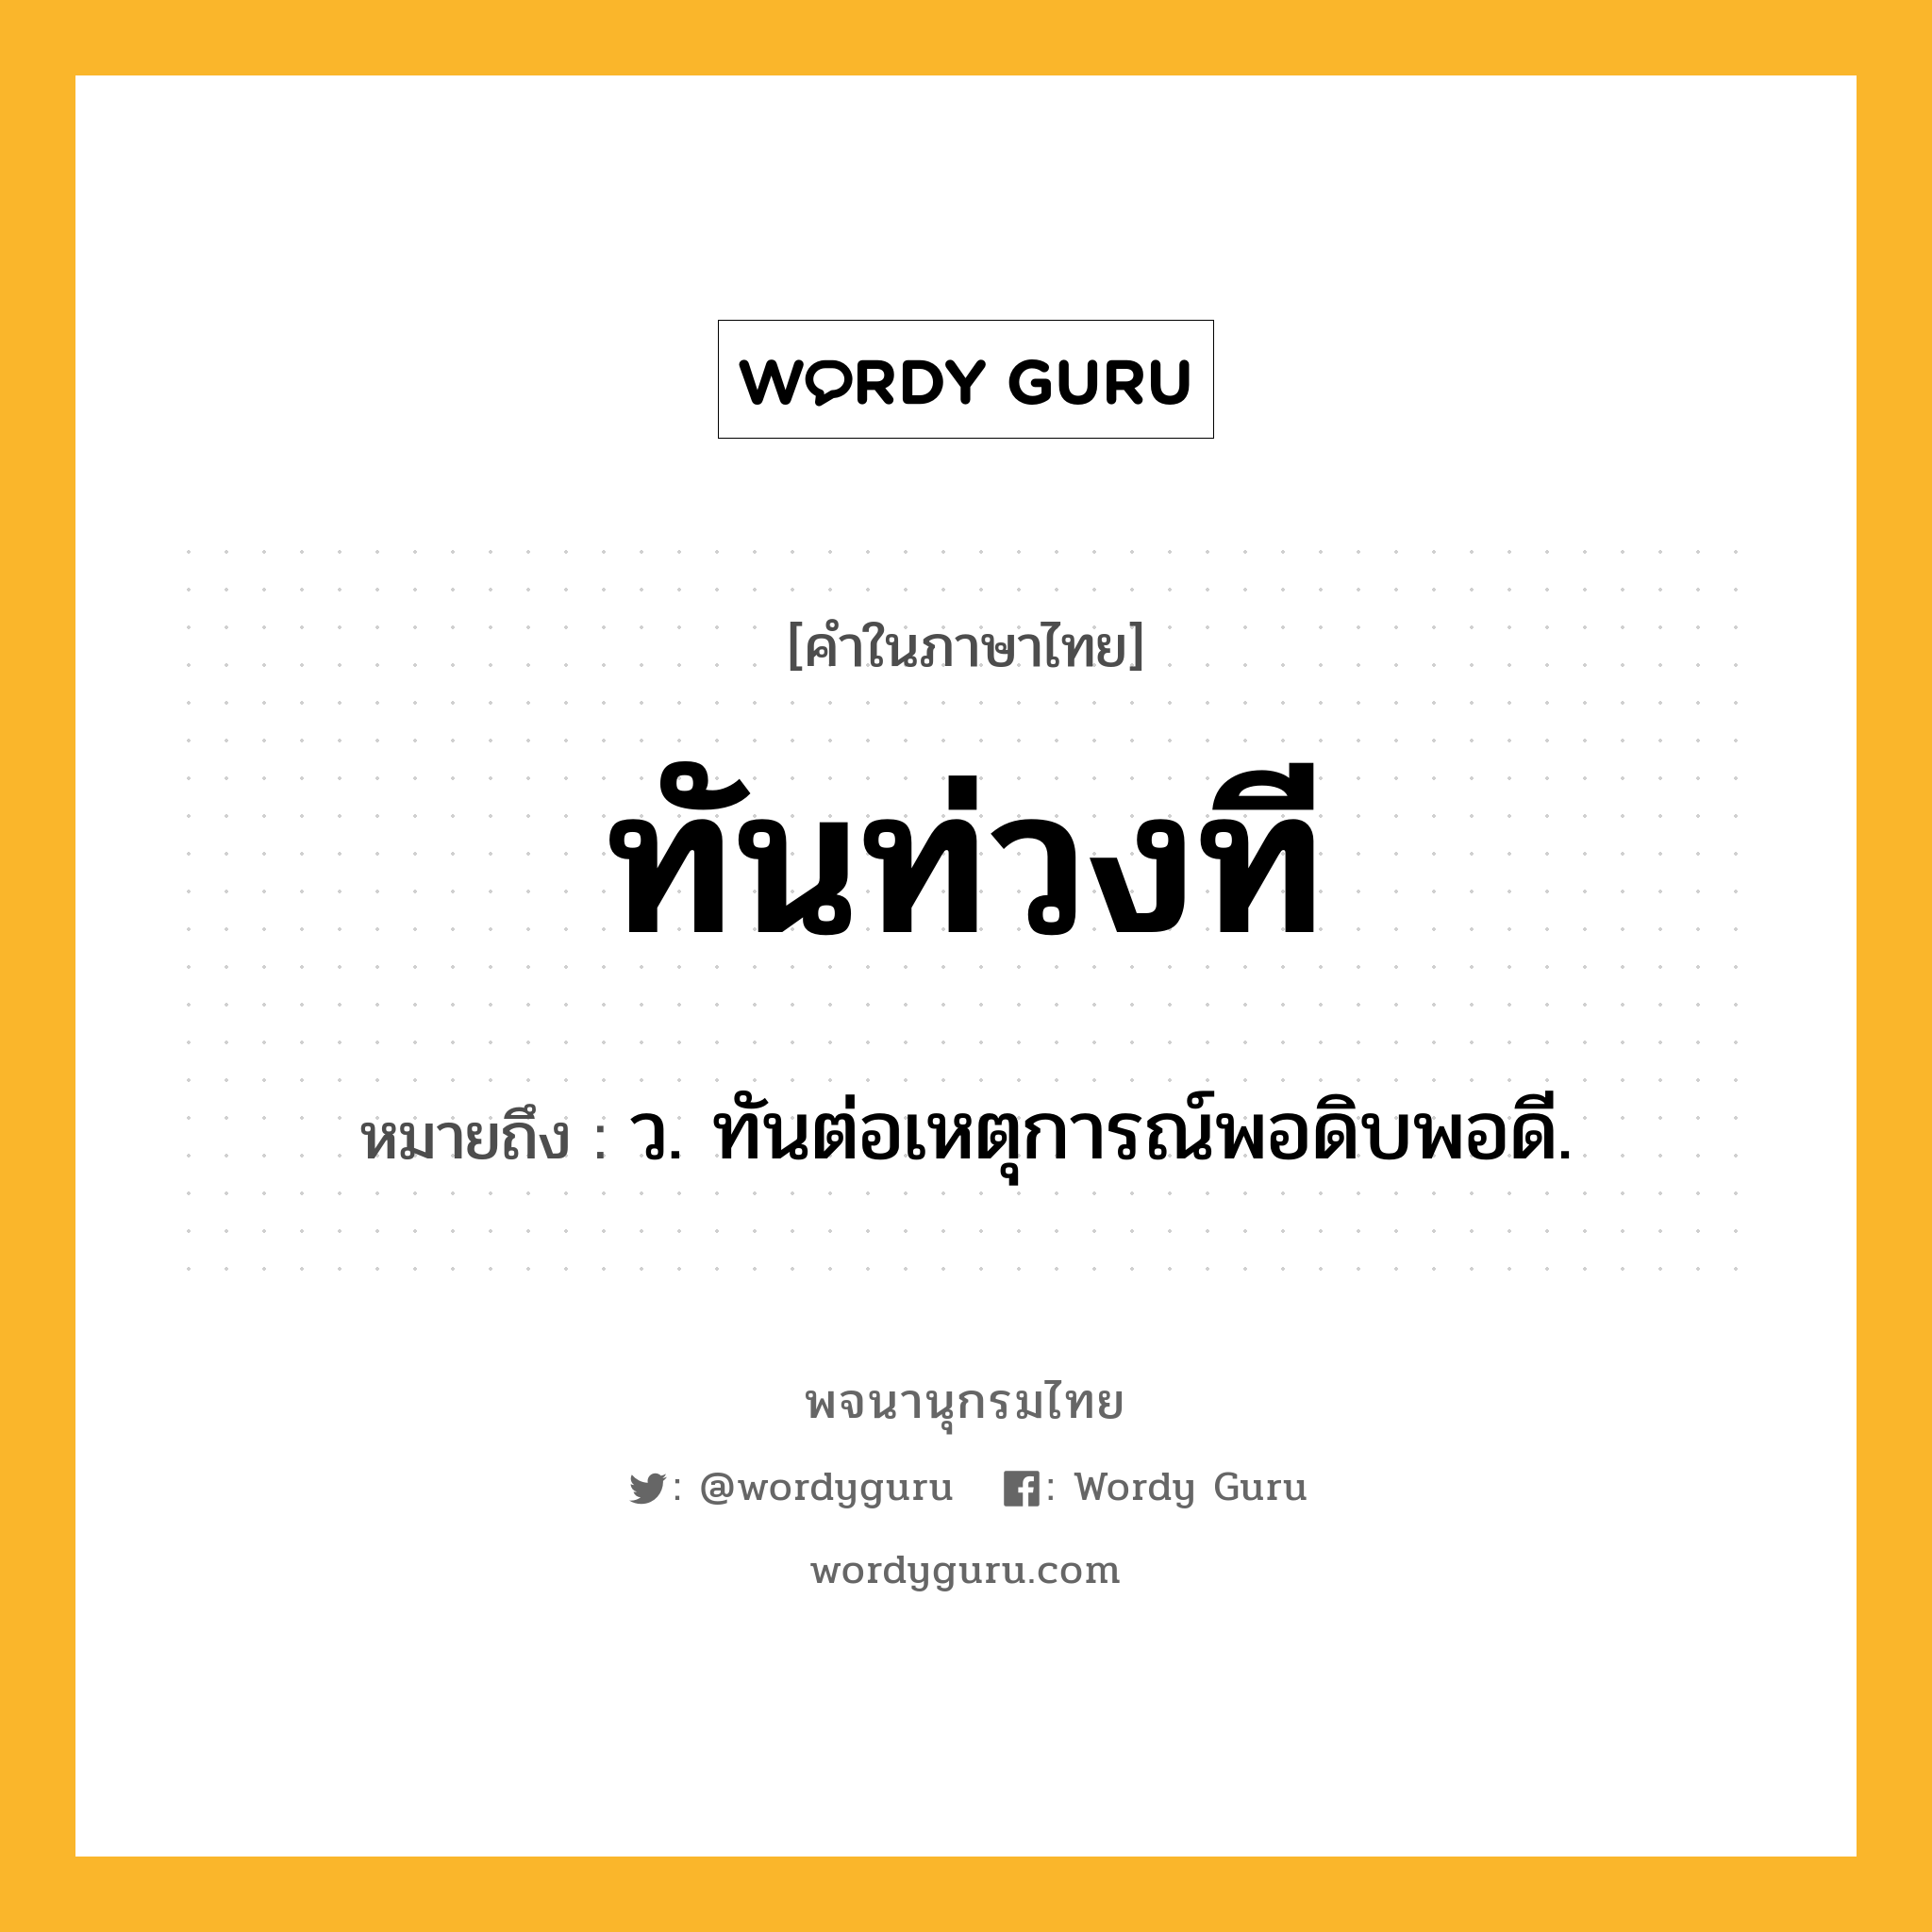 ทันท่วงที หมายถึงอะไร?, คำในภาษาไทย ทันท่วงที หมายถึง ว. ทันต่อเหตุการณ์พอดิบพอดี.